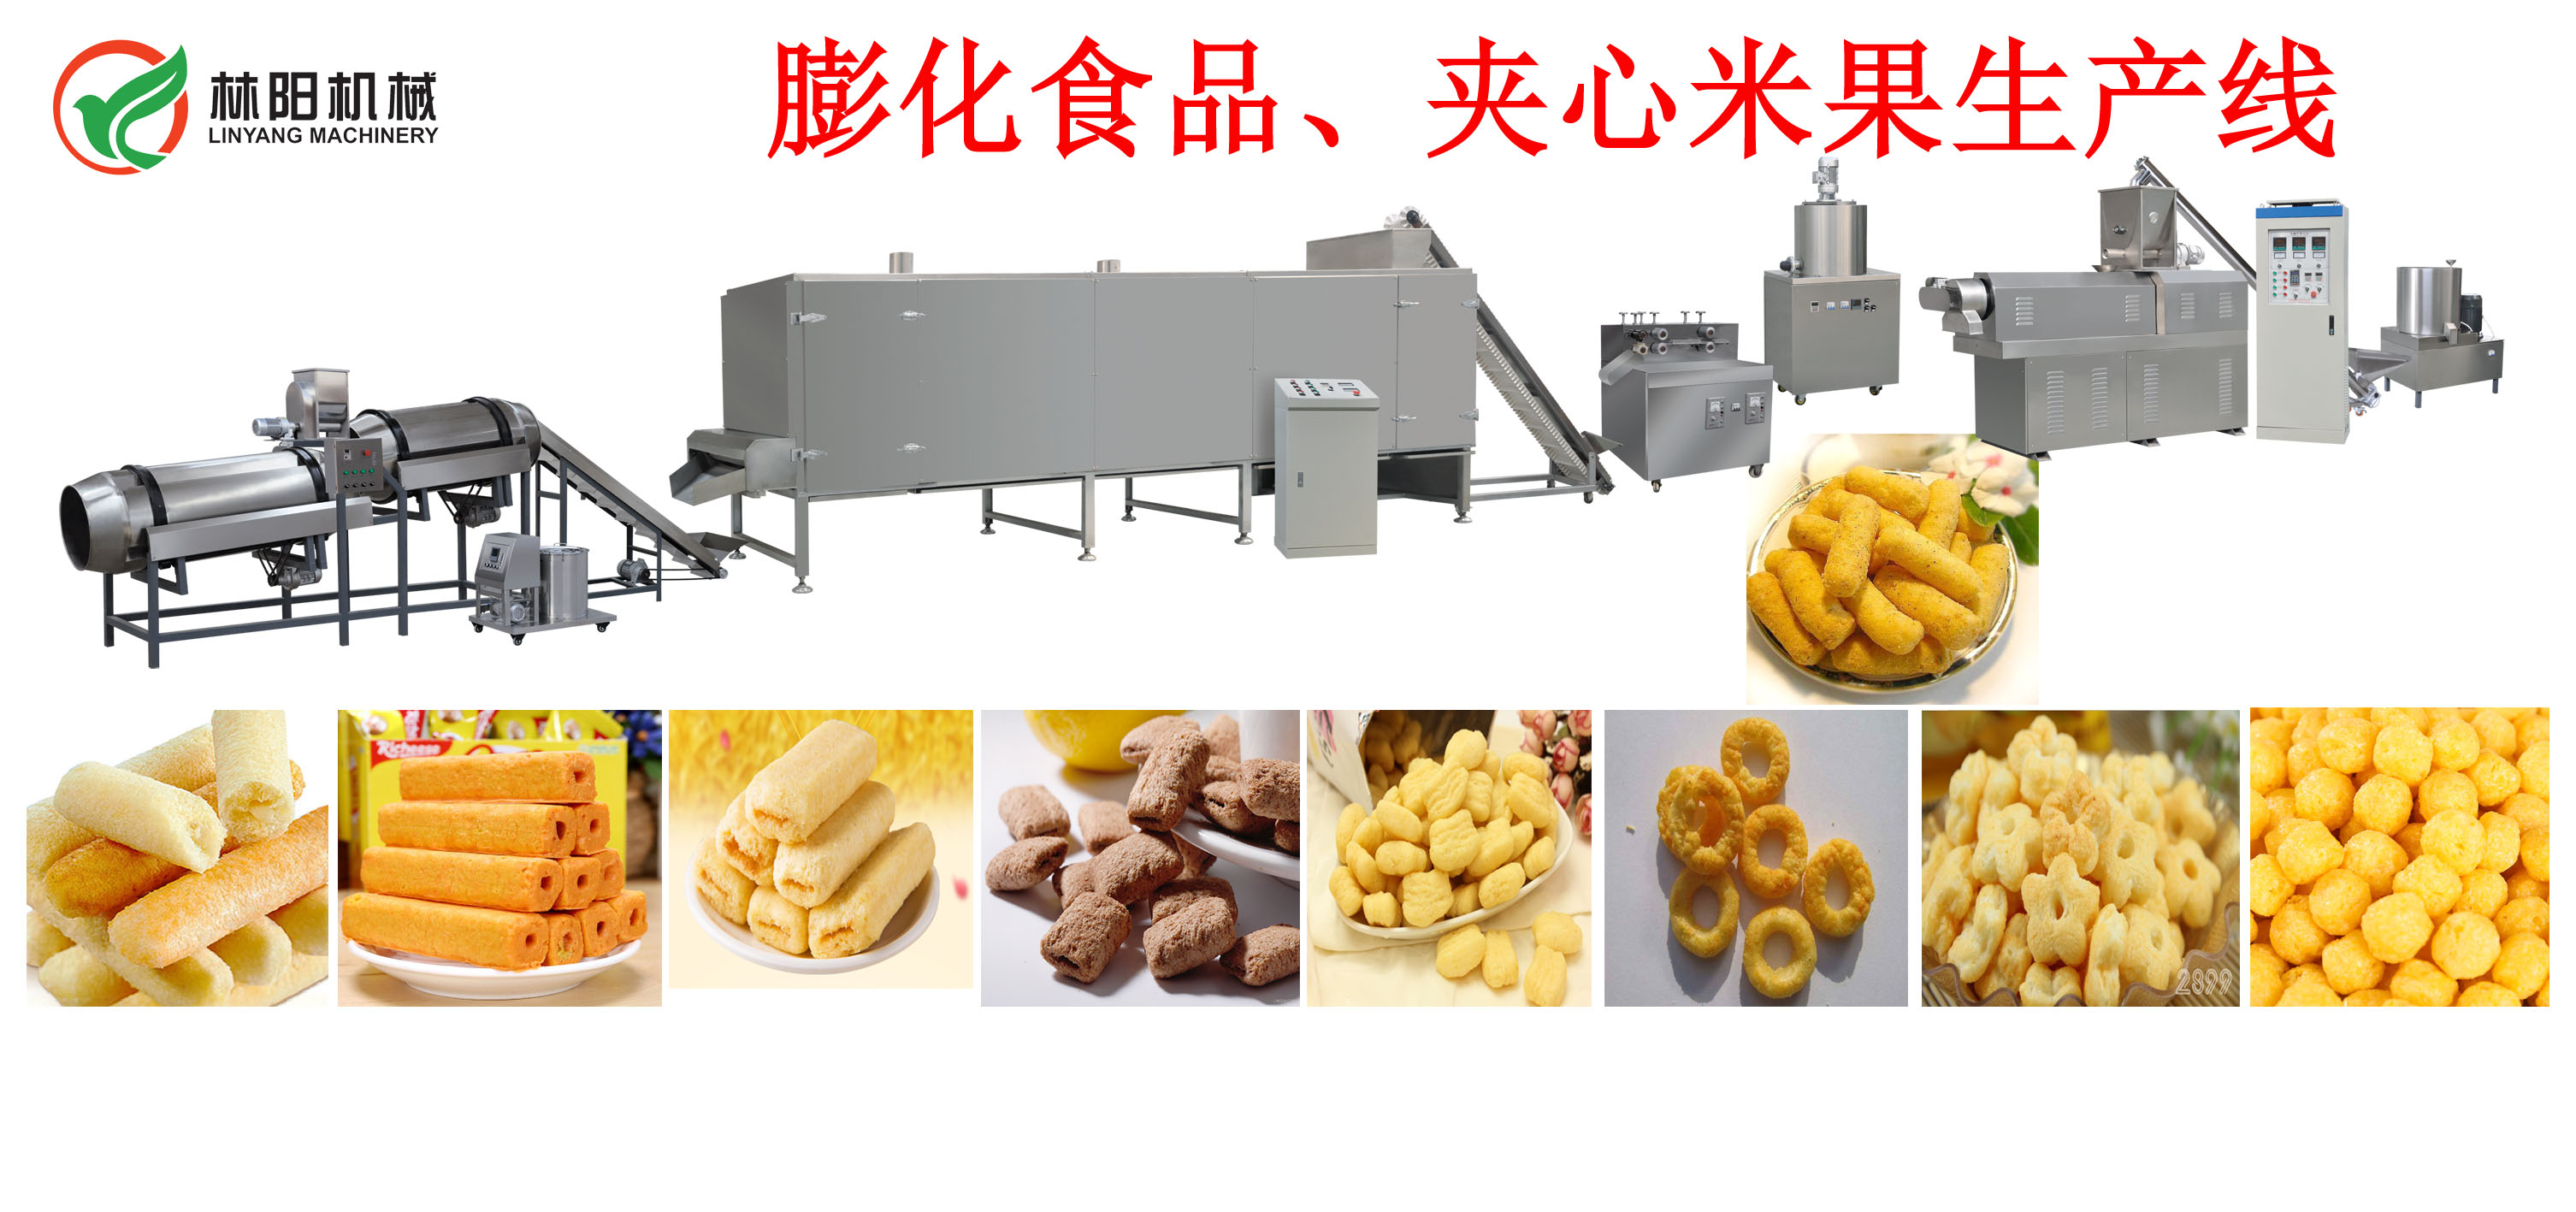 济南林阳机械夹心米果生产设备_畅销休闲食品加工设备价格